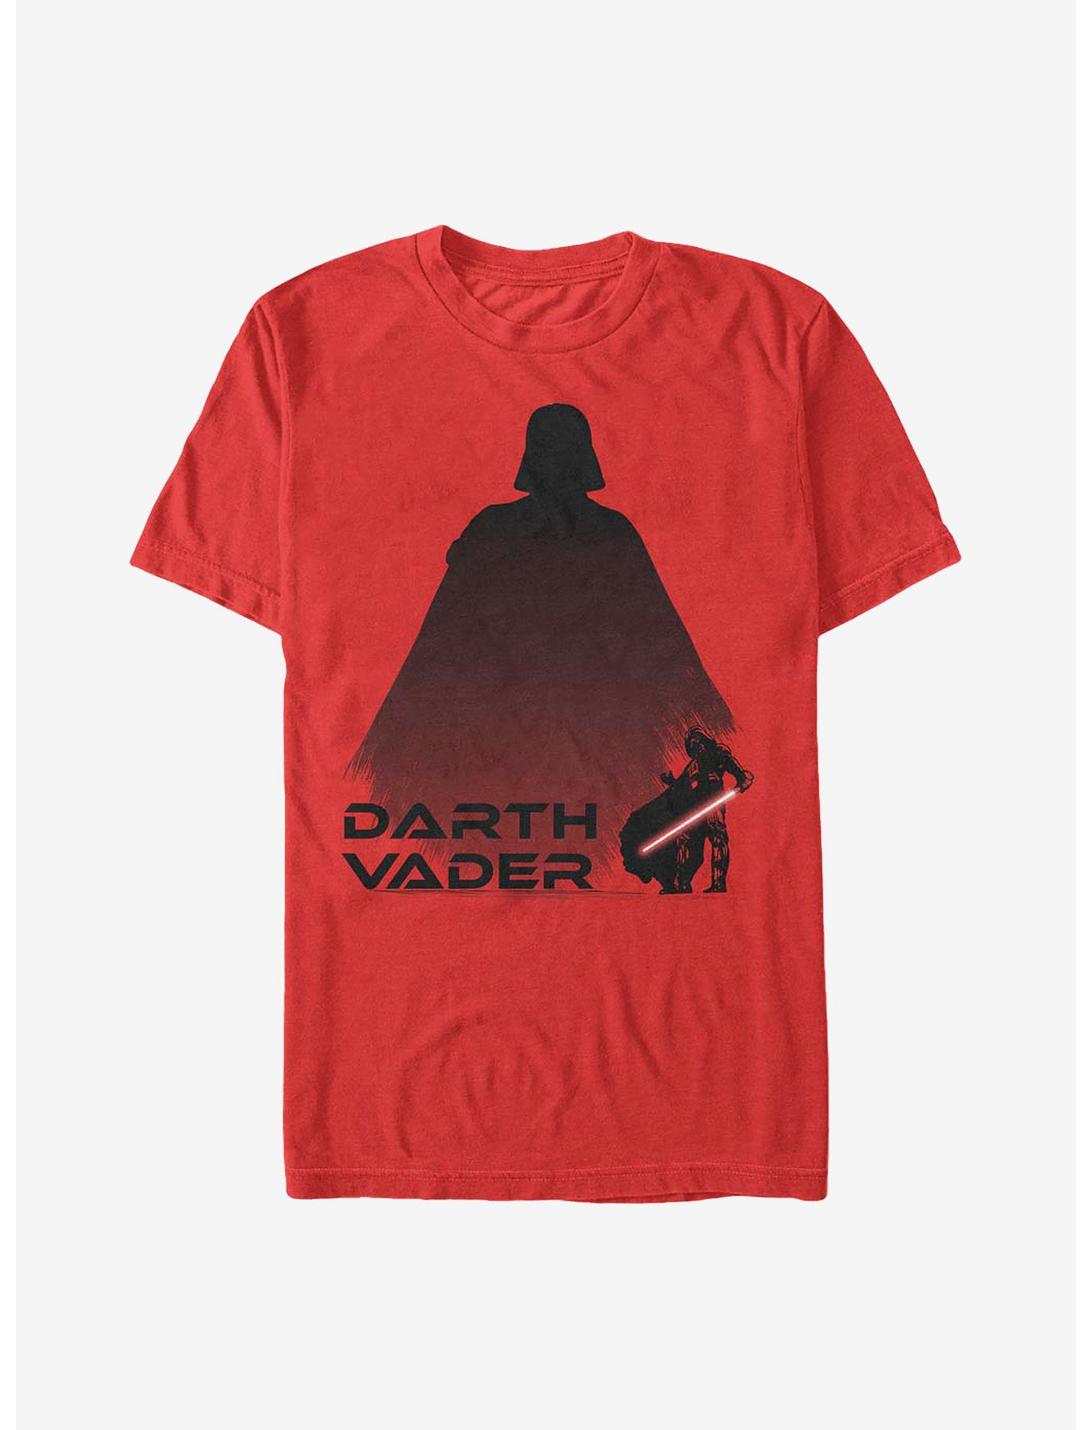 Star Wars Vader Shadow Mimic T-Shirt, RED, hi-res